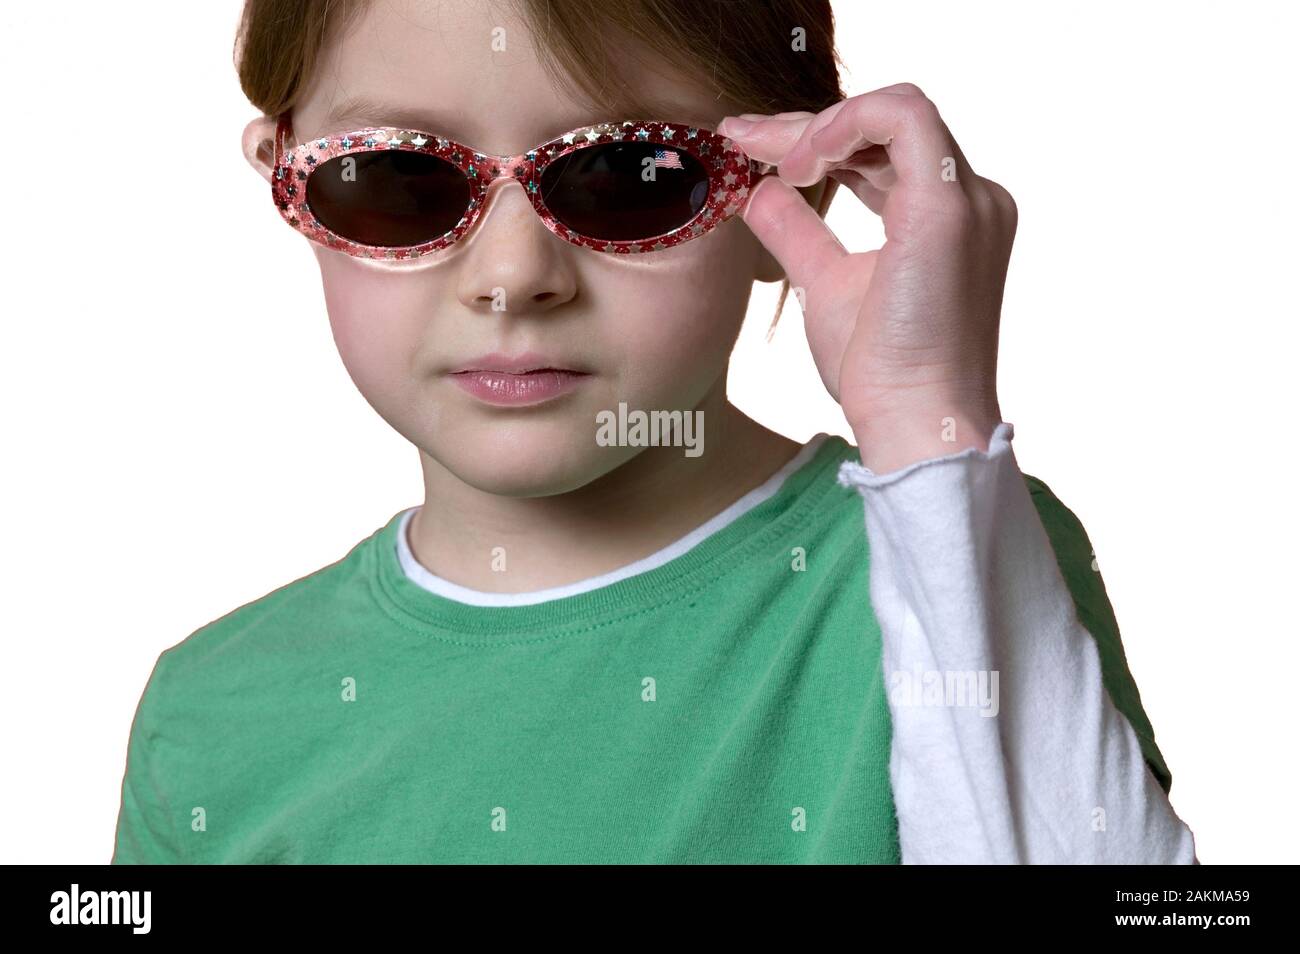 Fantastico piccolo 10-anno-vecchia ragazza indossando occhiali da sole, ritratto su sfondo bianco Foto Stock